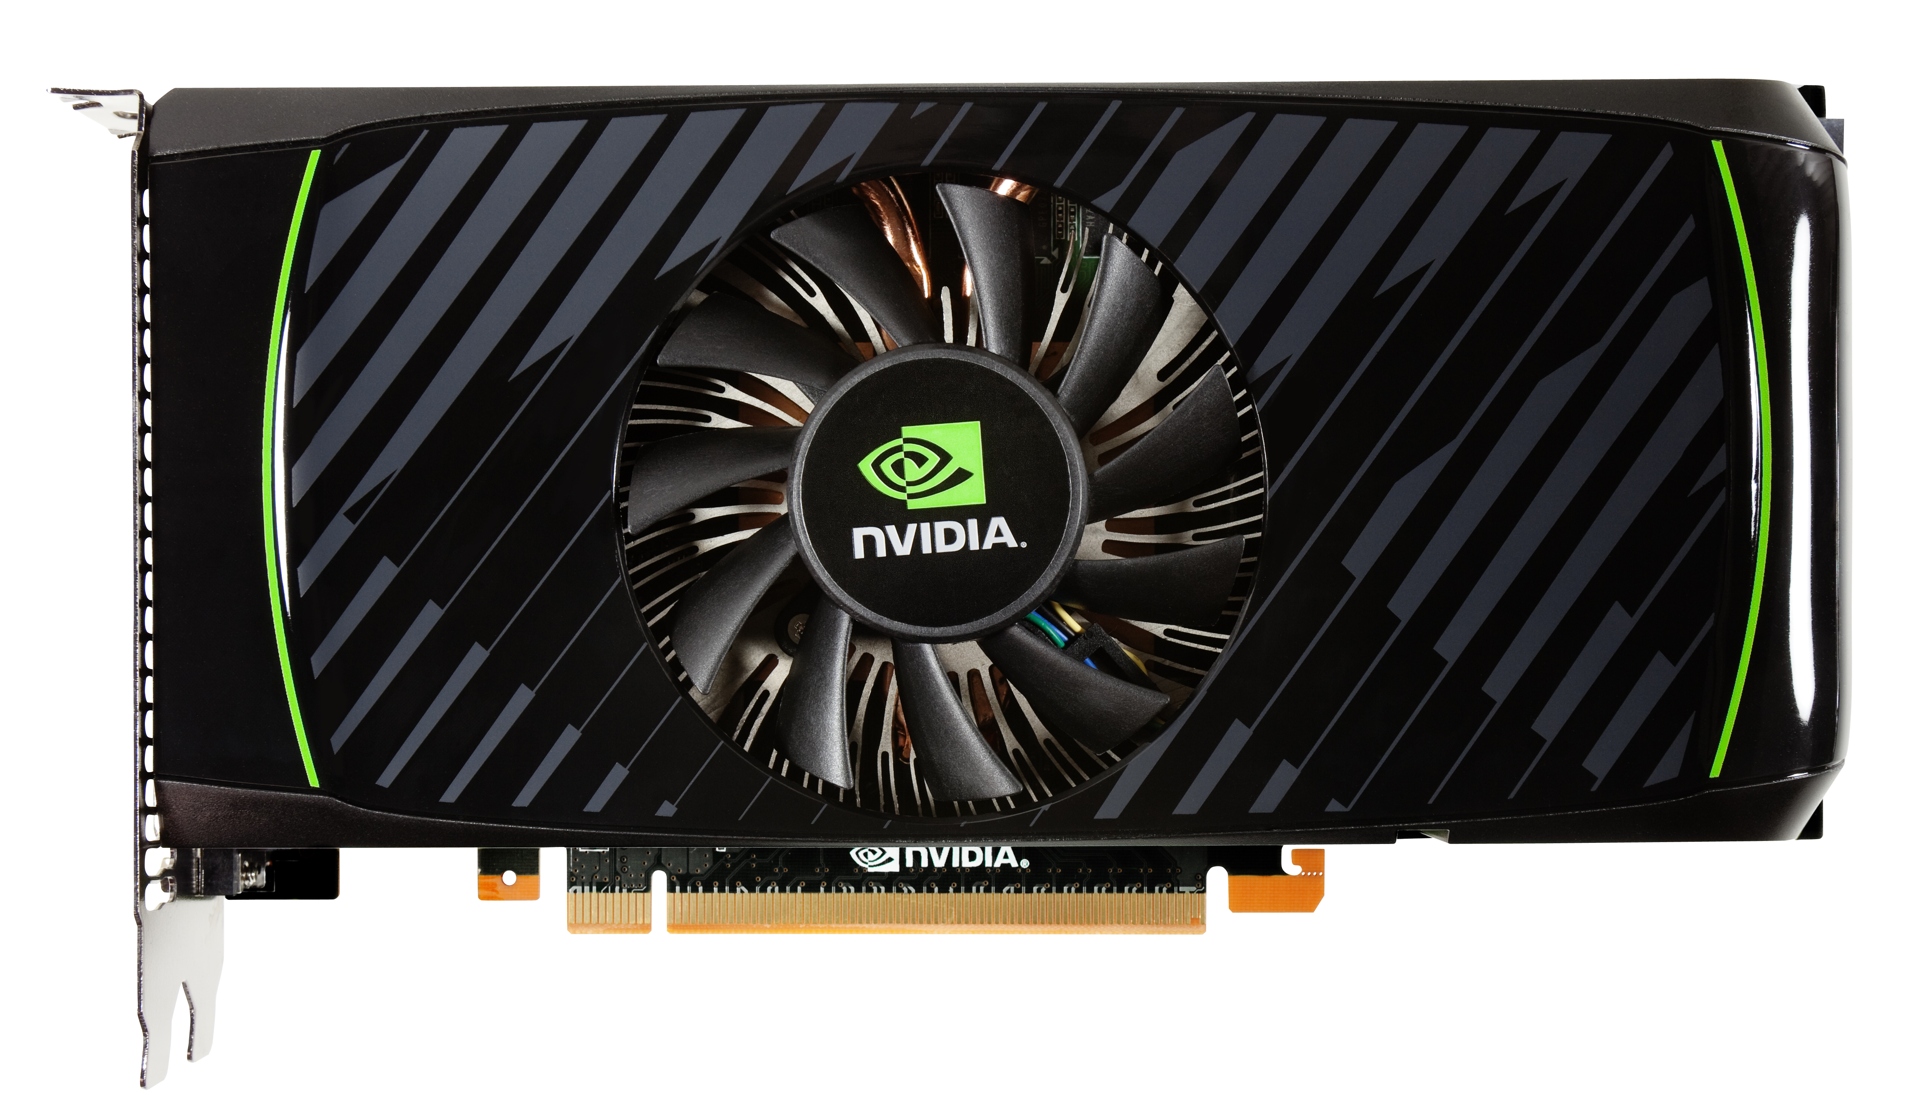 Immagine pubblicata in relazione al seguente contenuto: NVIDIA annuncia la gpu GeForce GTX 560 e il driver R275 beta | Nome immagine: news15122_1.jpg